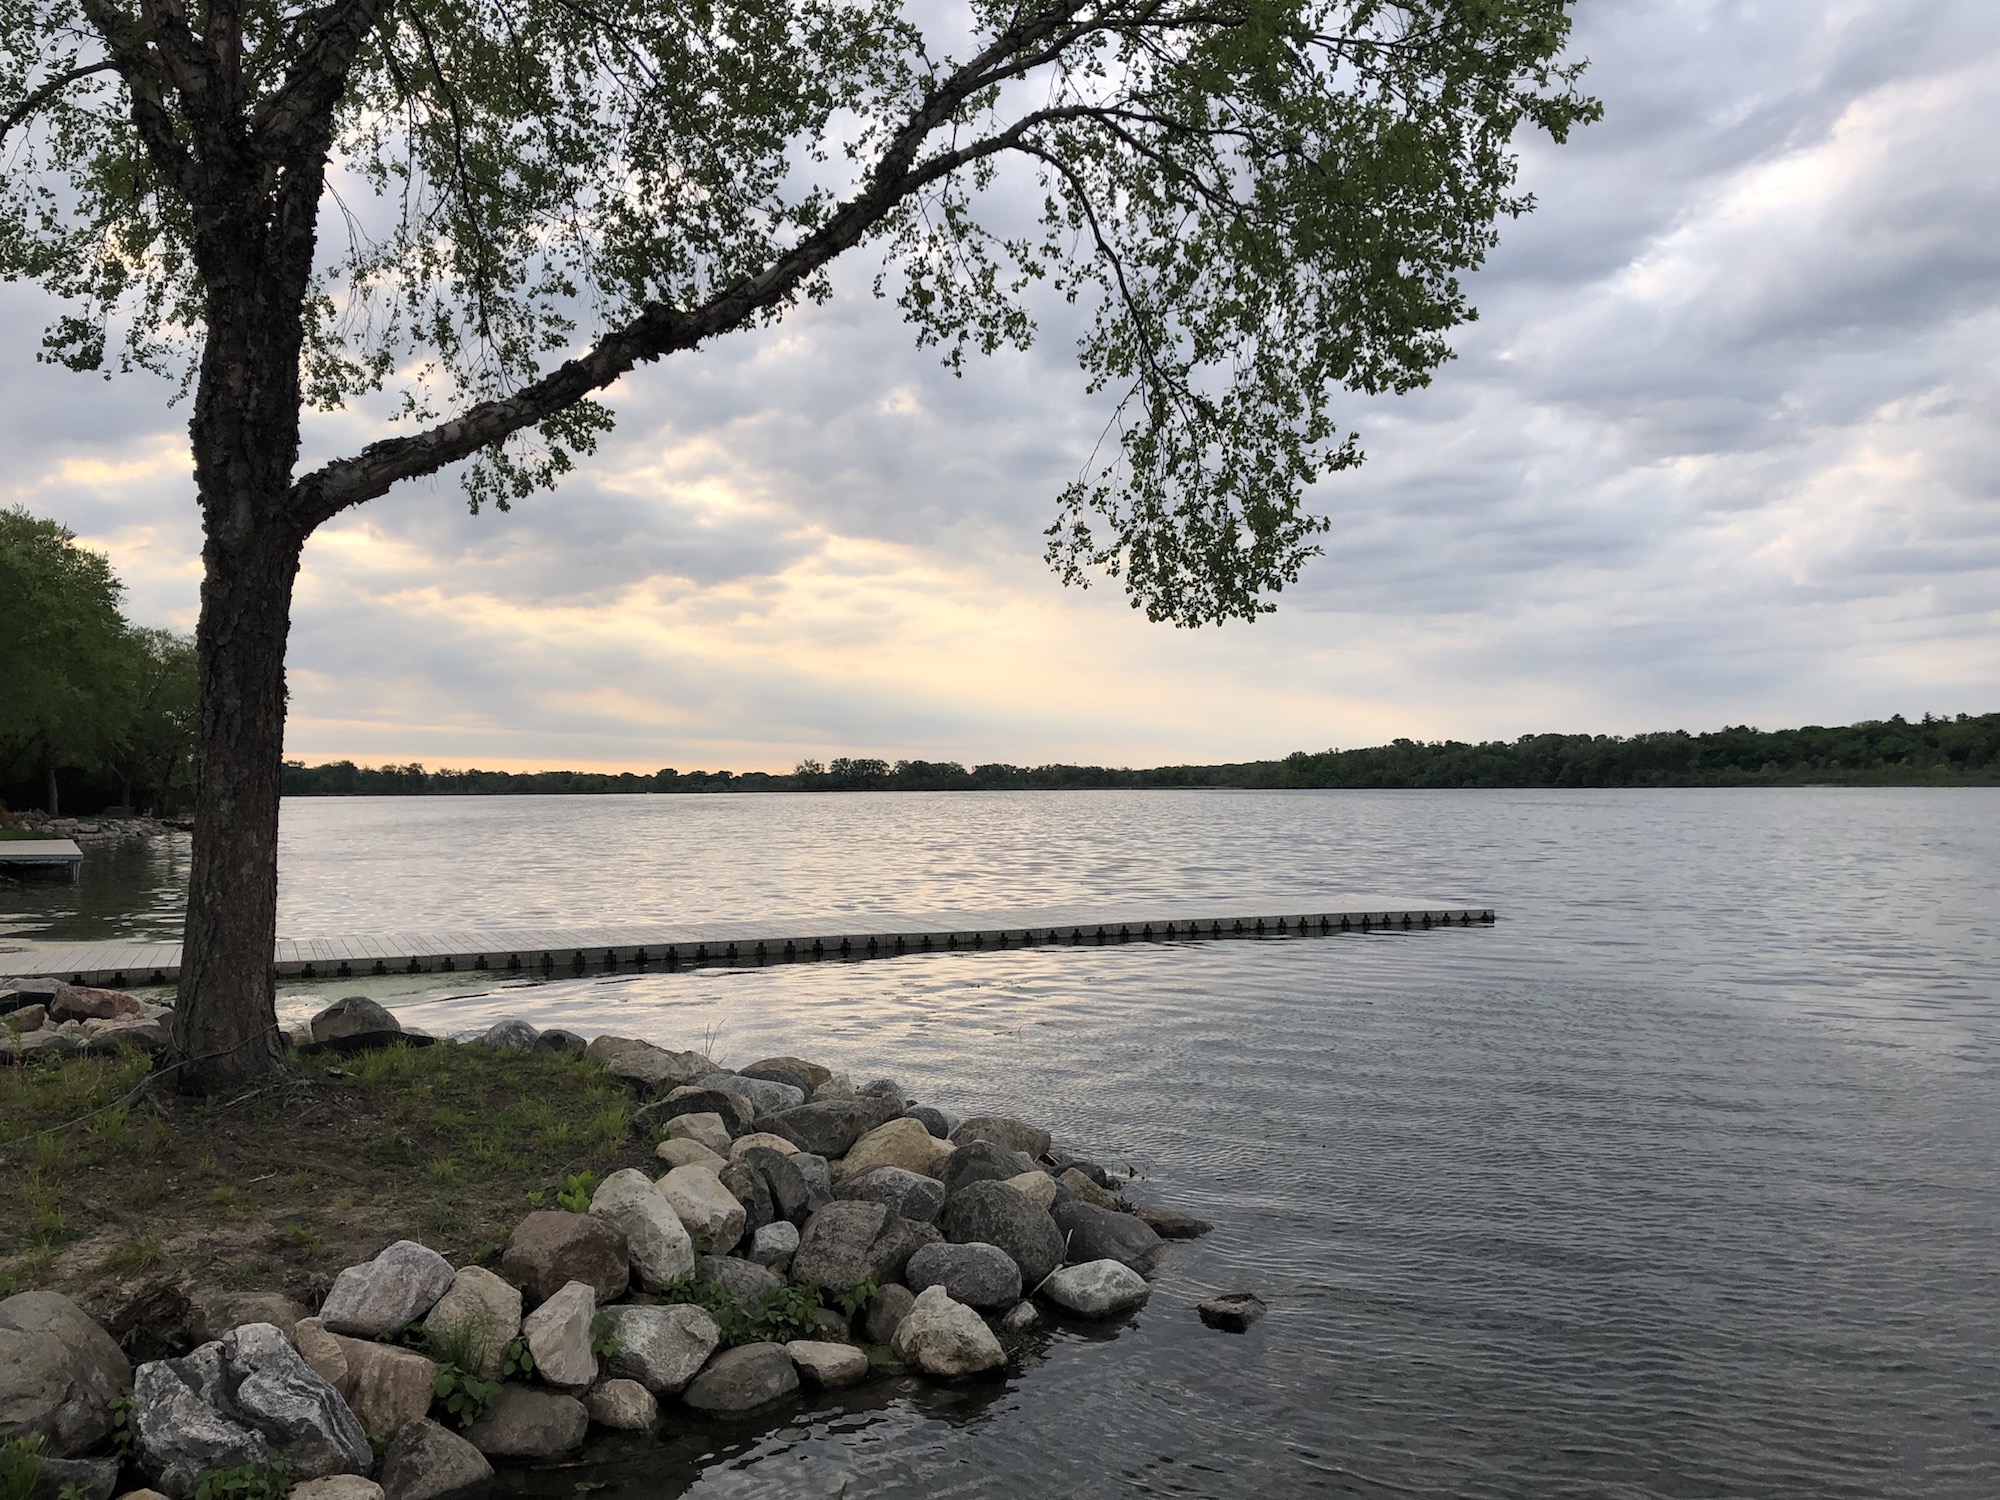 Lake Wingra on June 3, 2019.